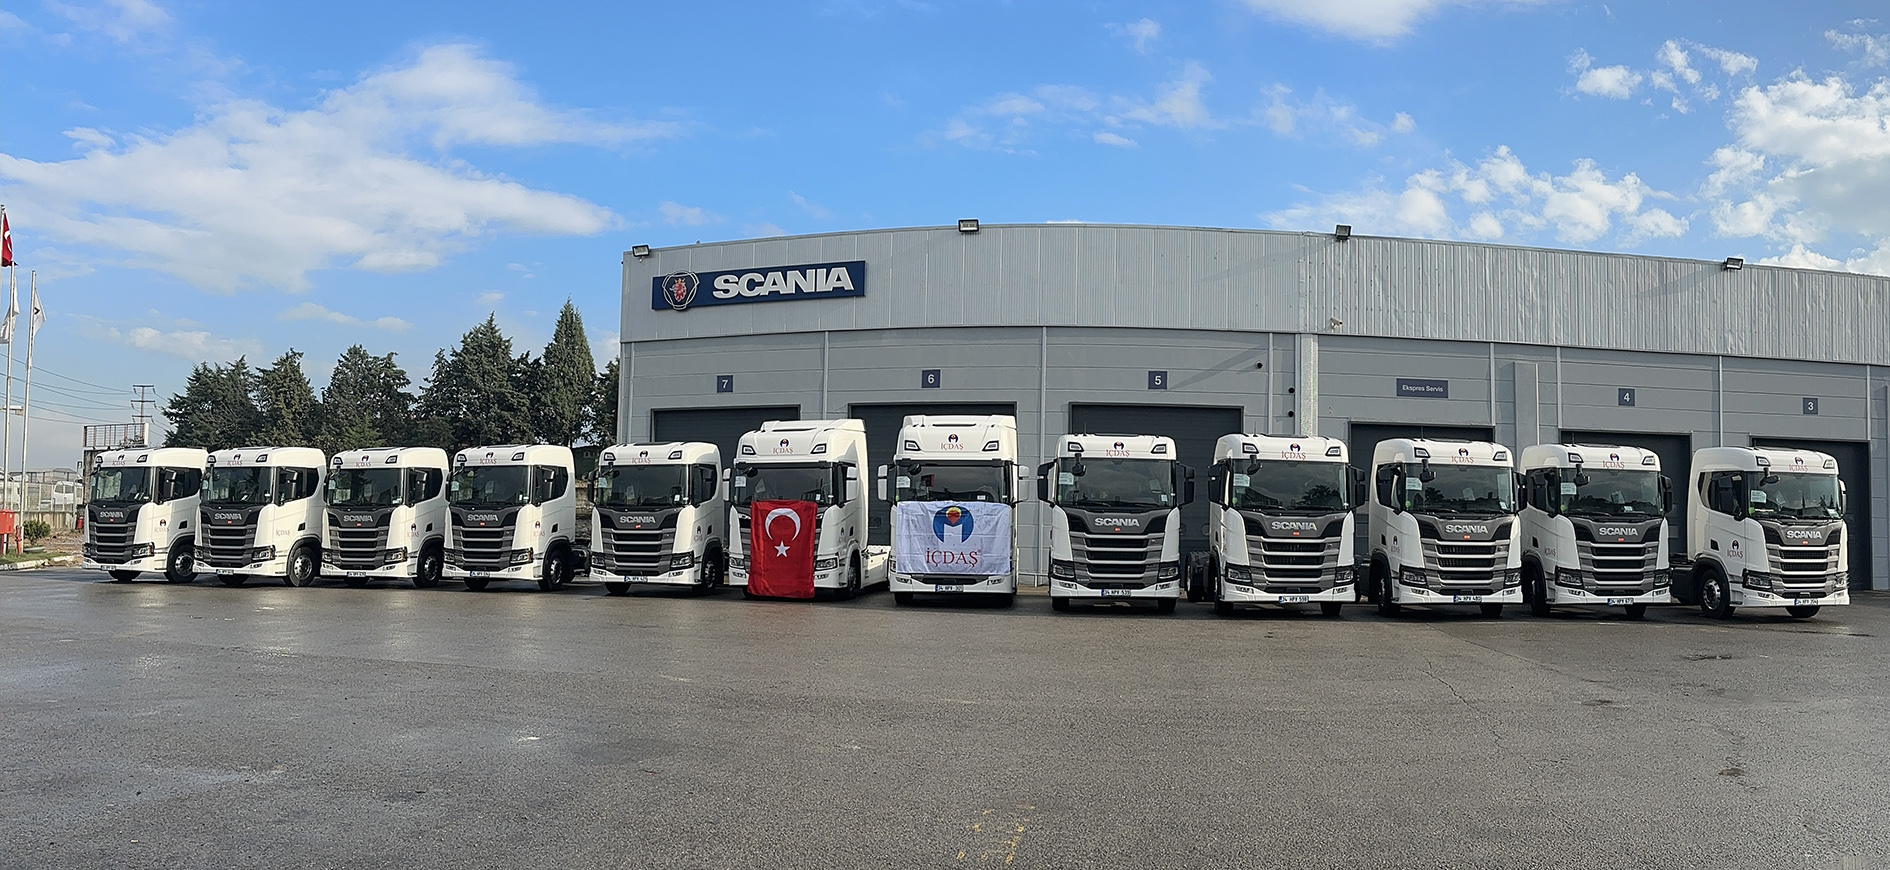 İÇDAŞ Grup Ulaştırma Filosuna 22 Adet Scania Aldı